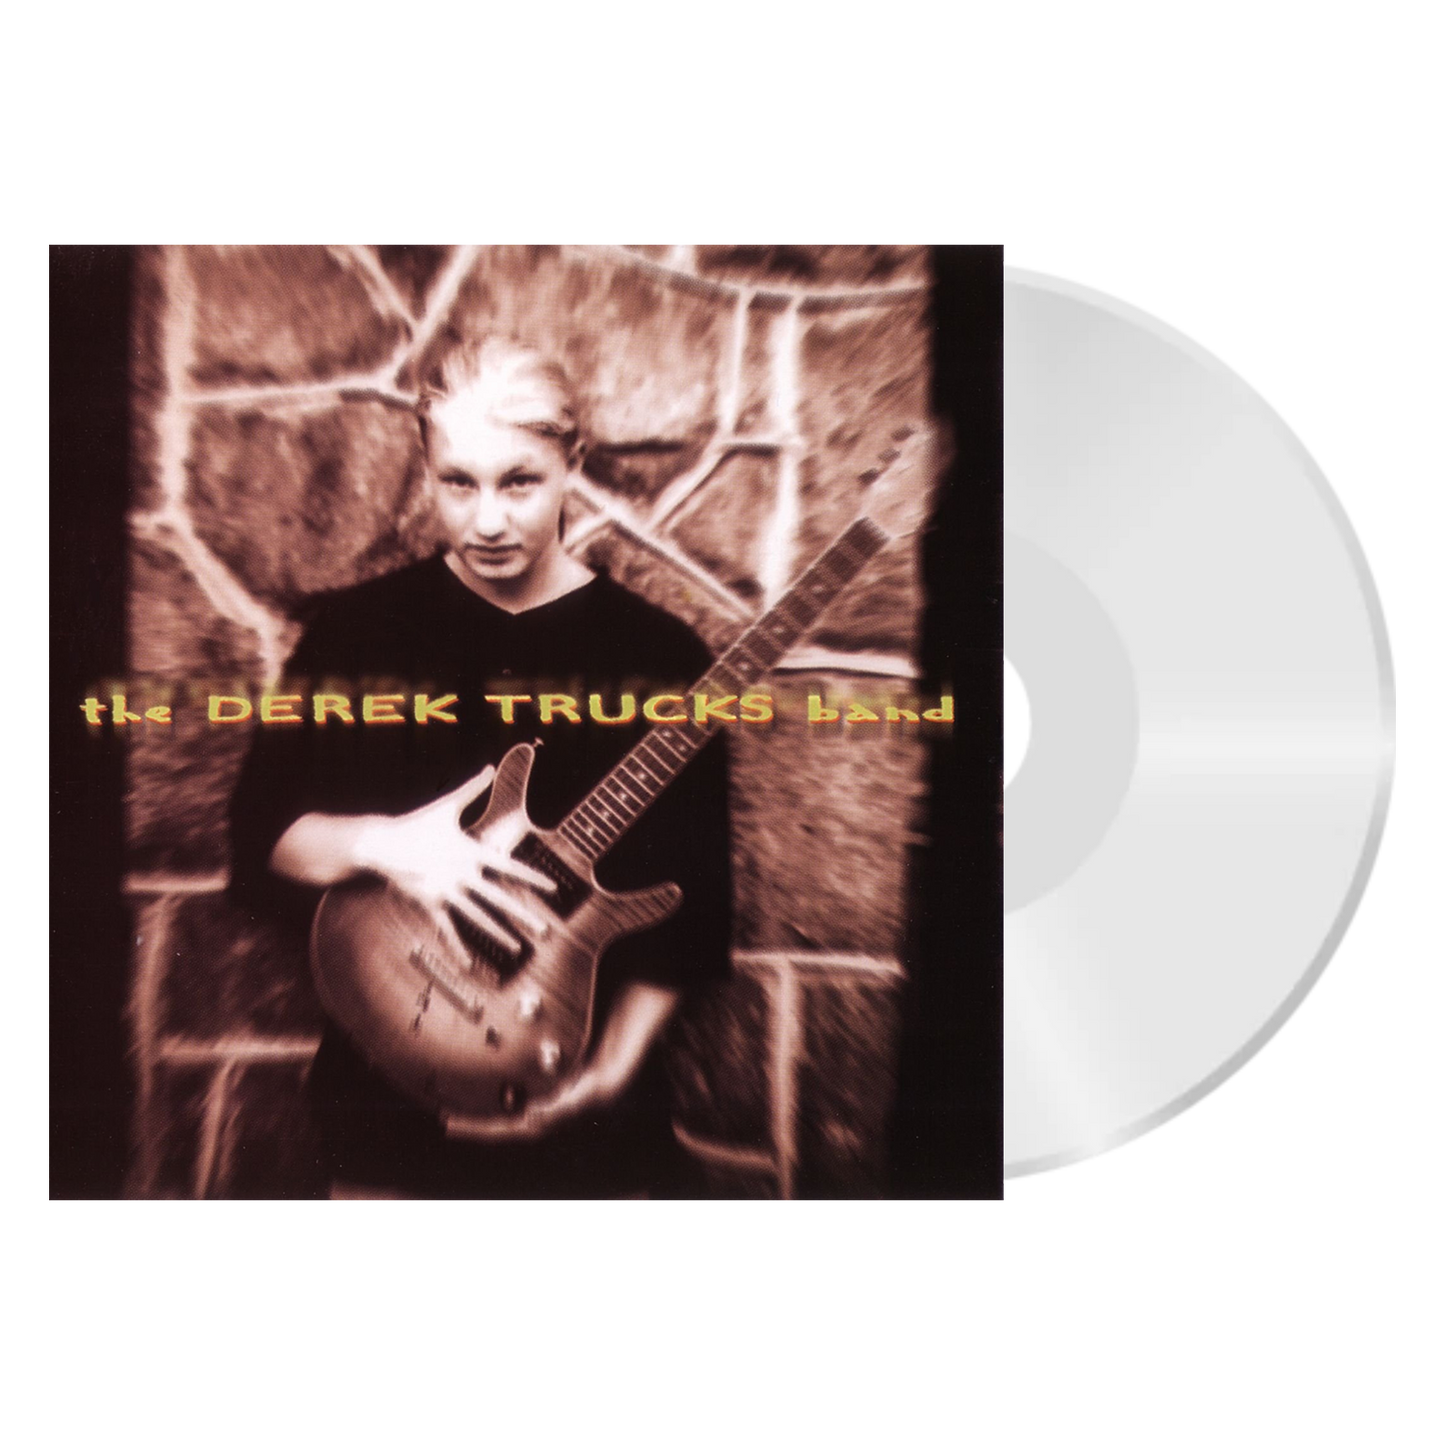 DTB - Derek Trucks Band CD